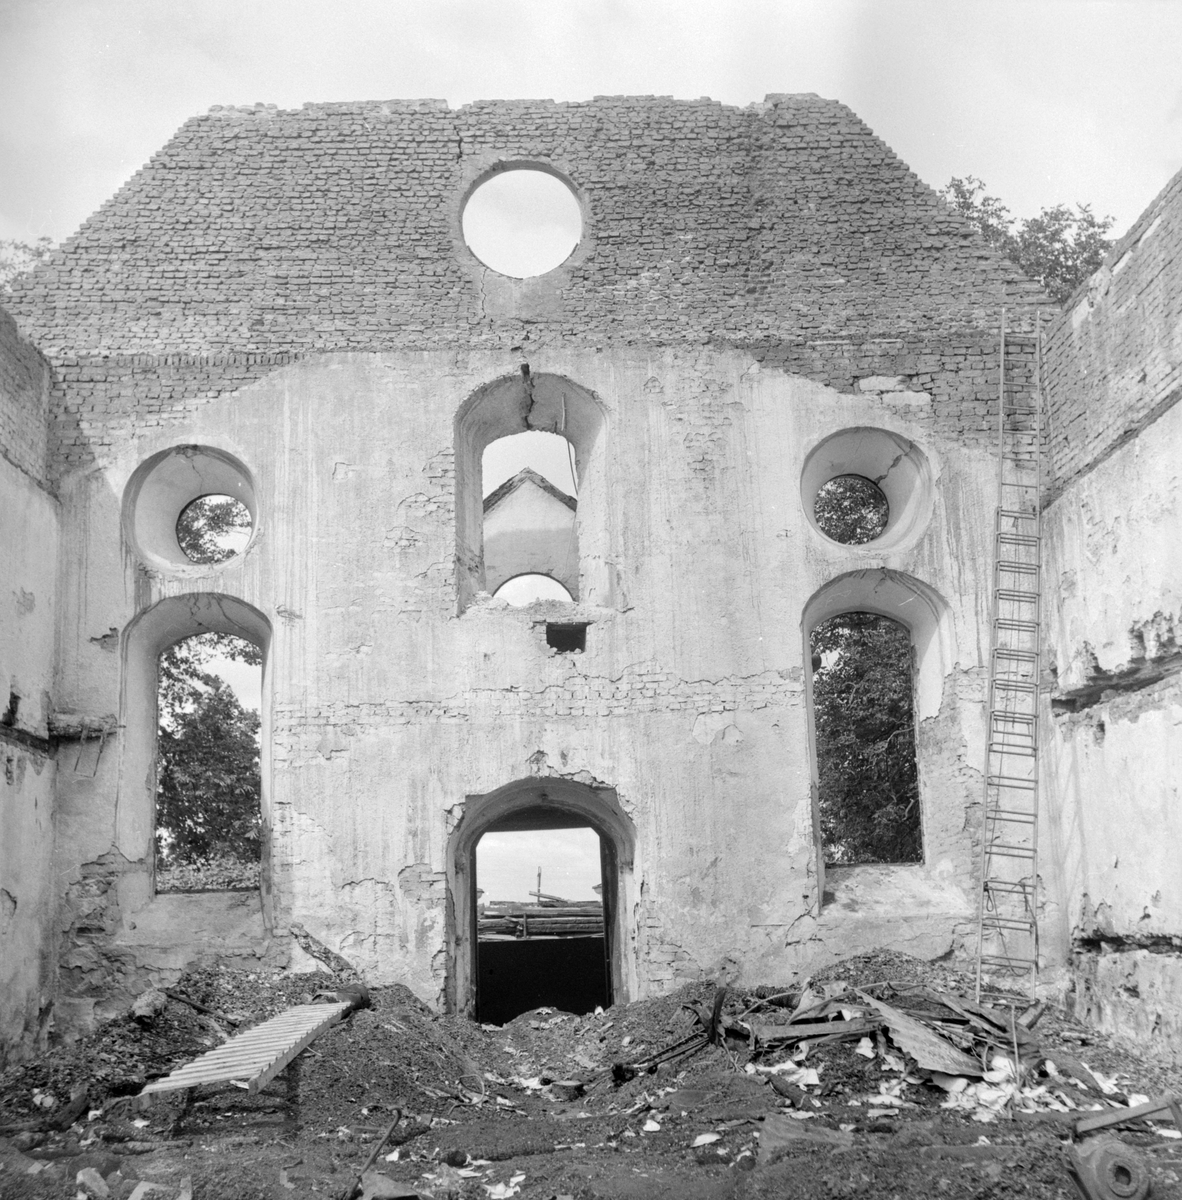 Den 21 juni 1961 utbröt en förödande brand i Vist kyrka. I hård vind spreds sig elden explosionsartat och efter ett par timmar återstod endast de svartbrända murarna. Redan efter några dagar var man i full färd att dokumentera skadorna för att undersöka möjlighet att återuppbygga kyrkan.